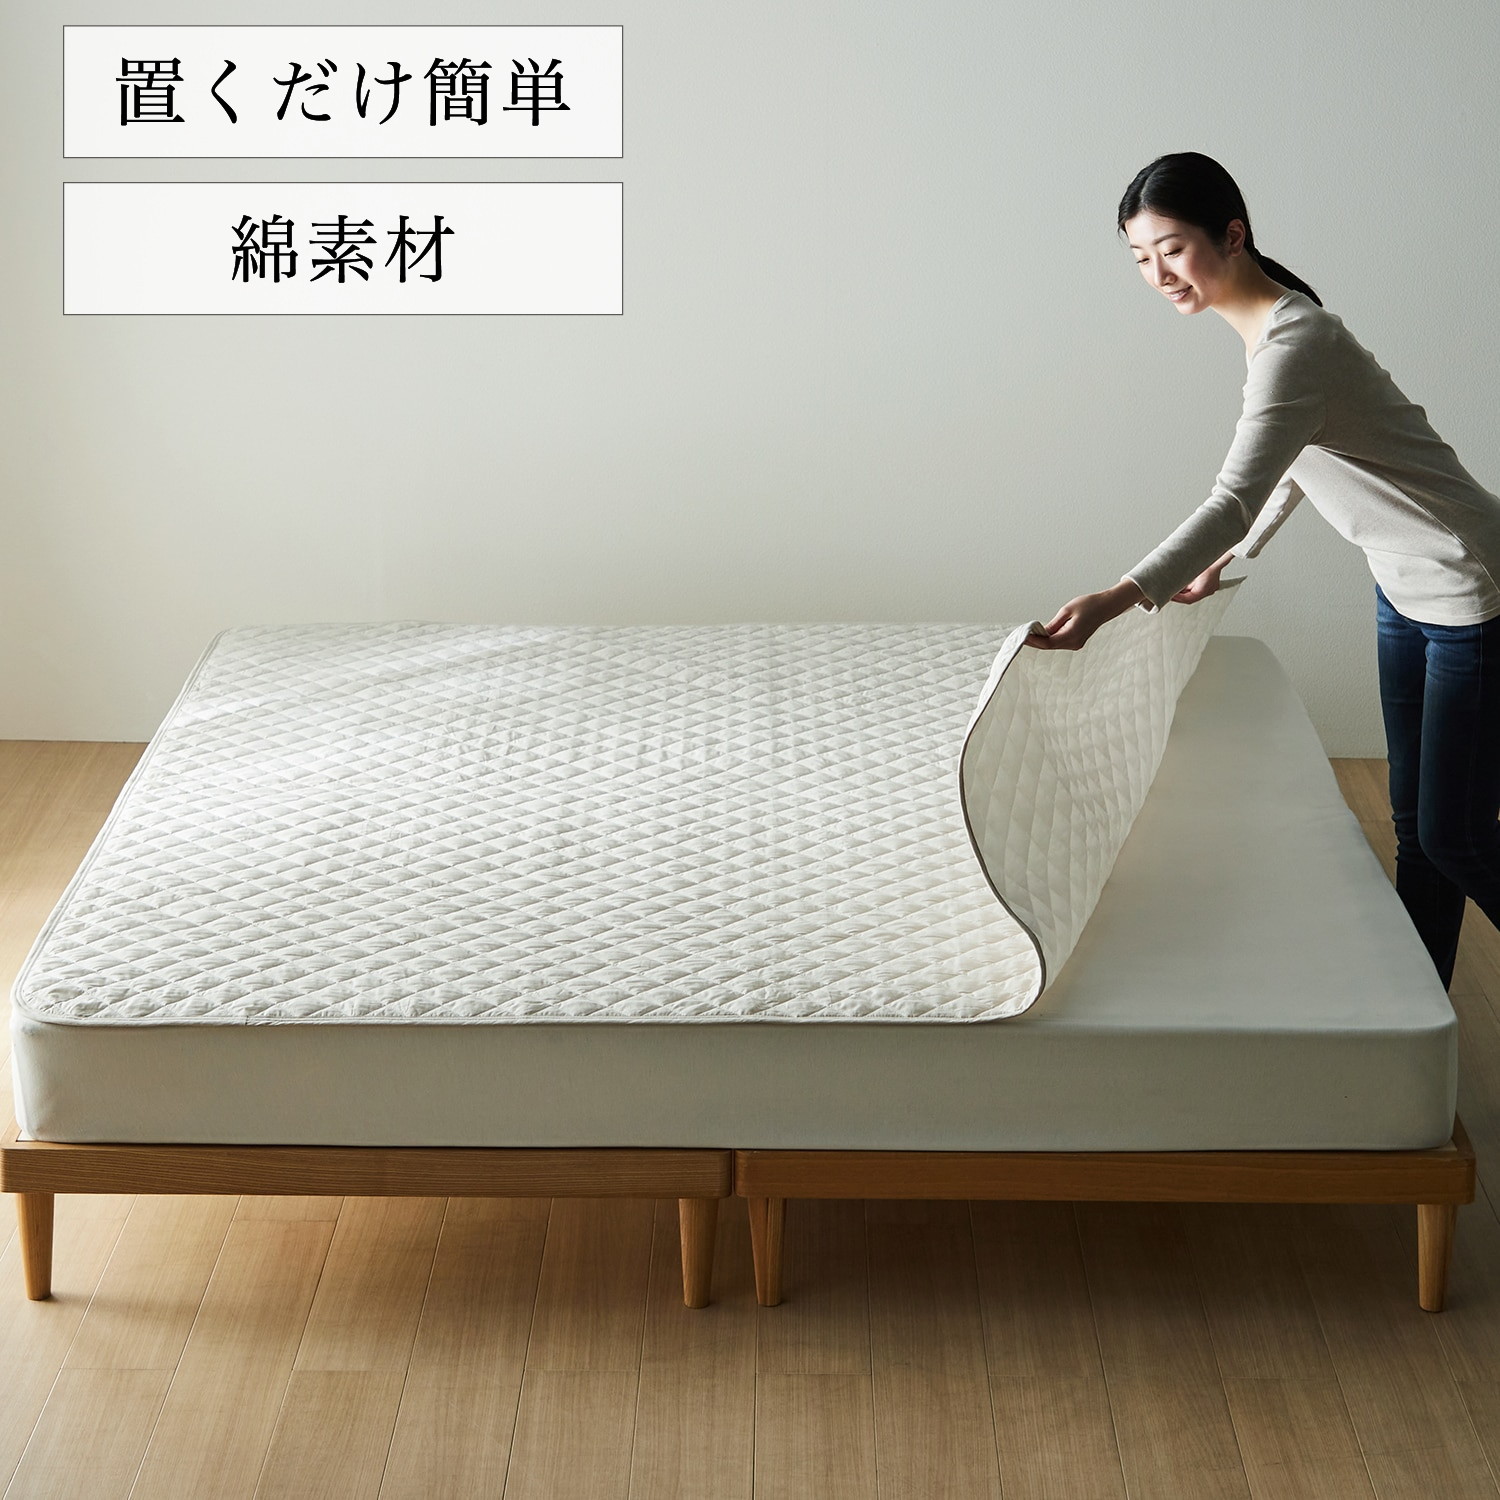 【BELLE MAISON DAYS】【大きめサイズ】先染め綿素材を使った取り換え簡単!置くだけ敷きパッド